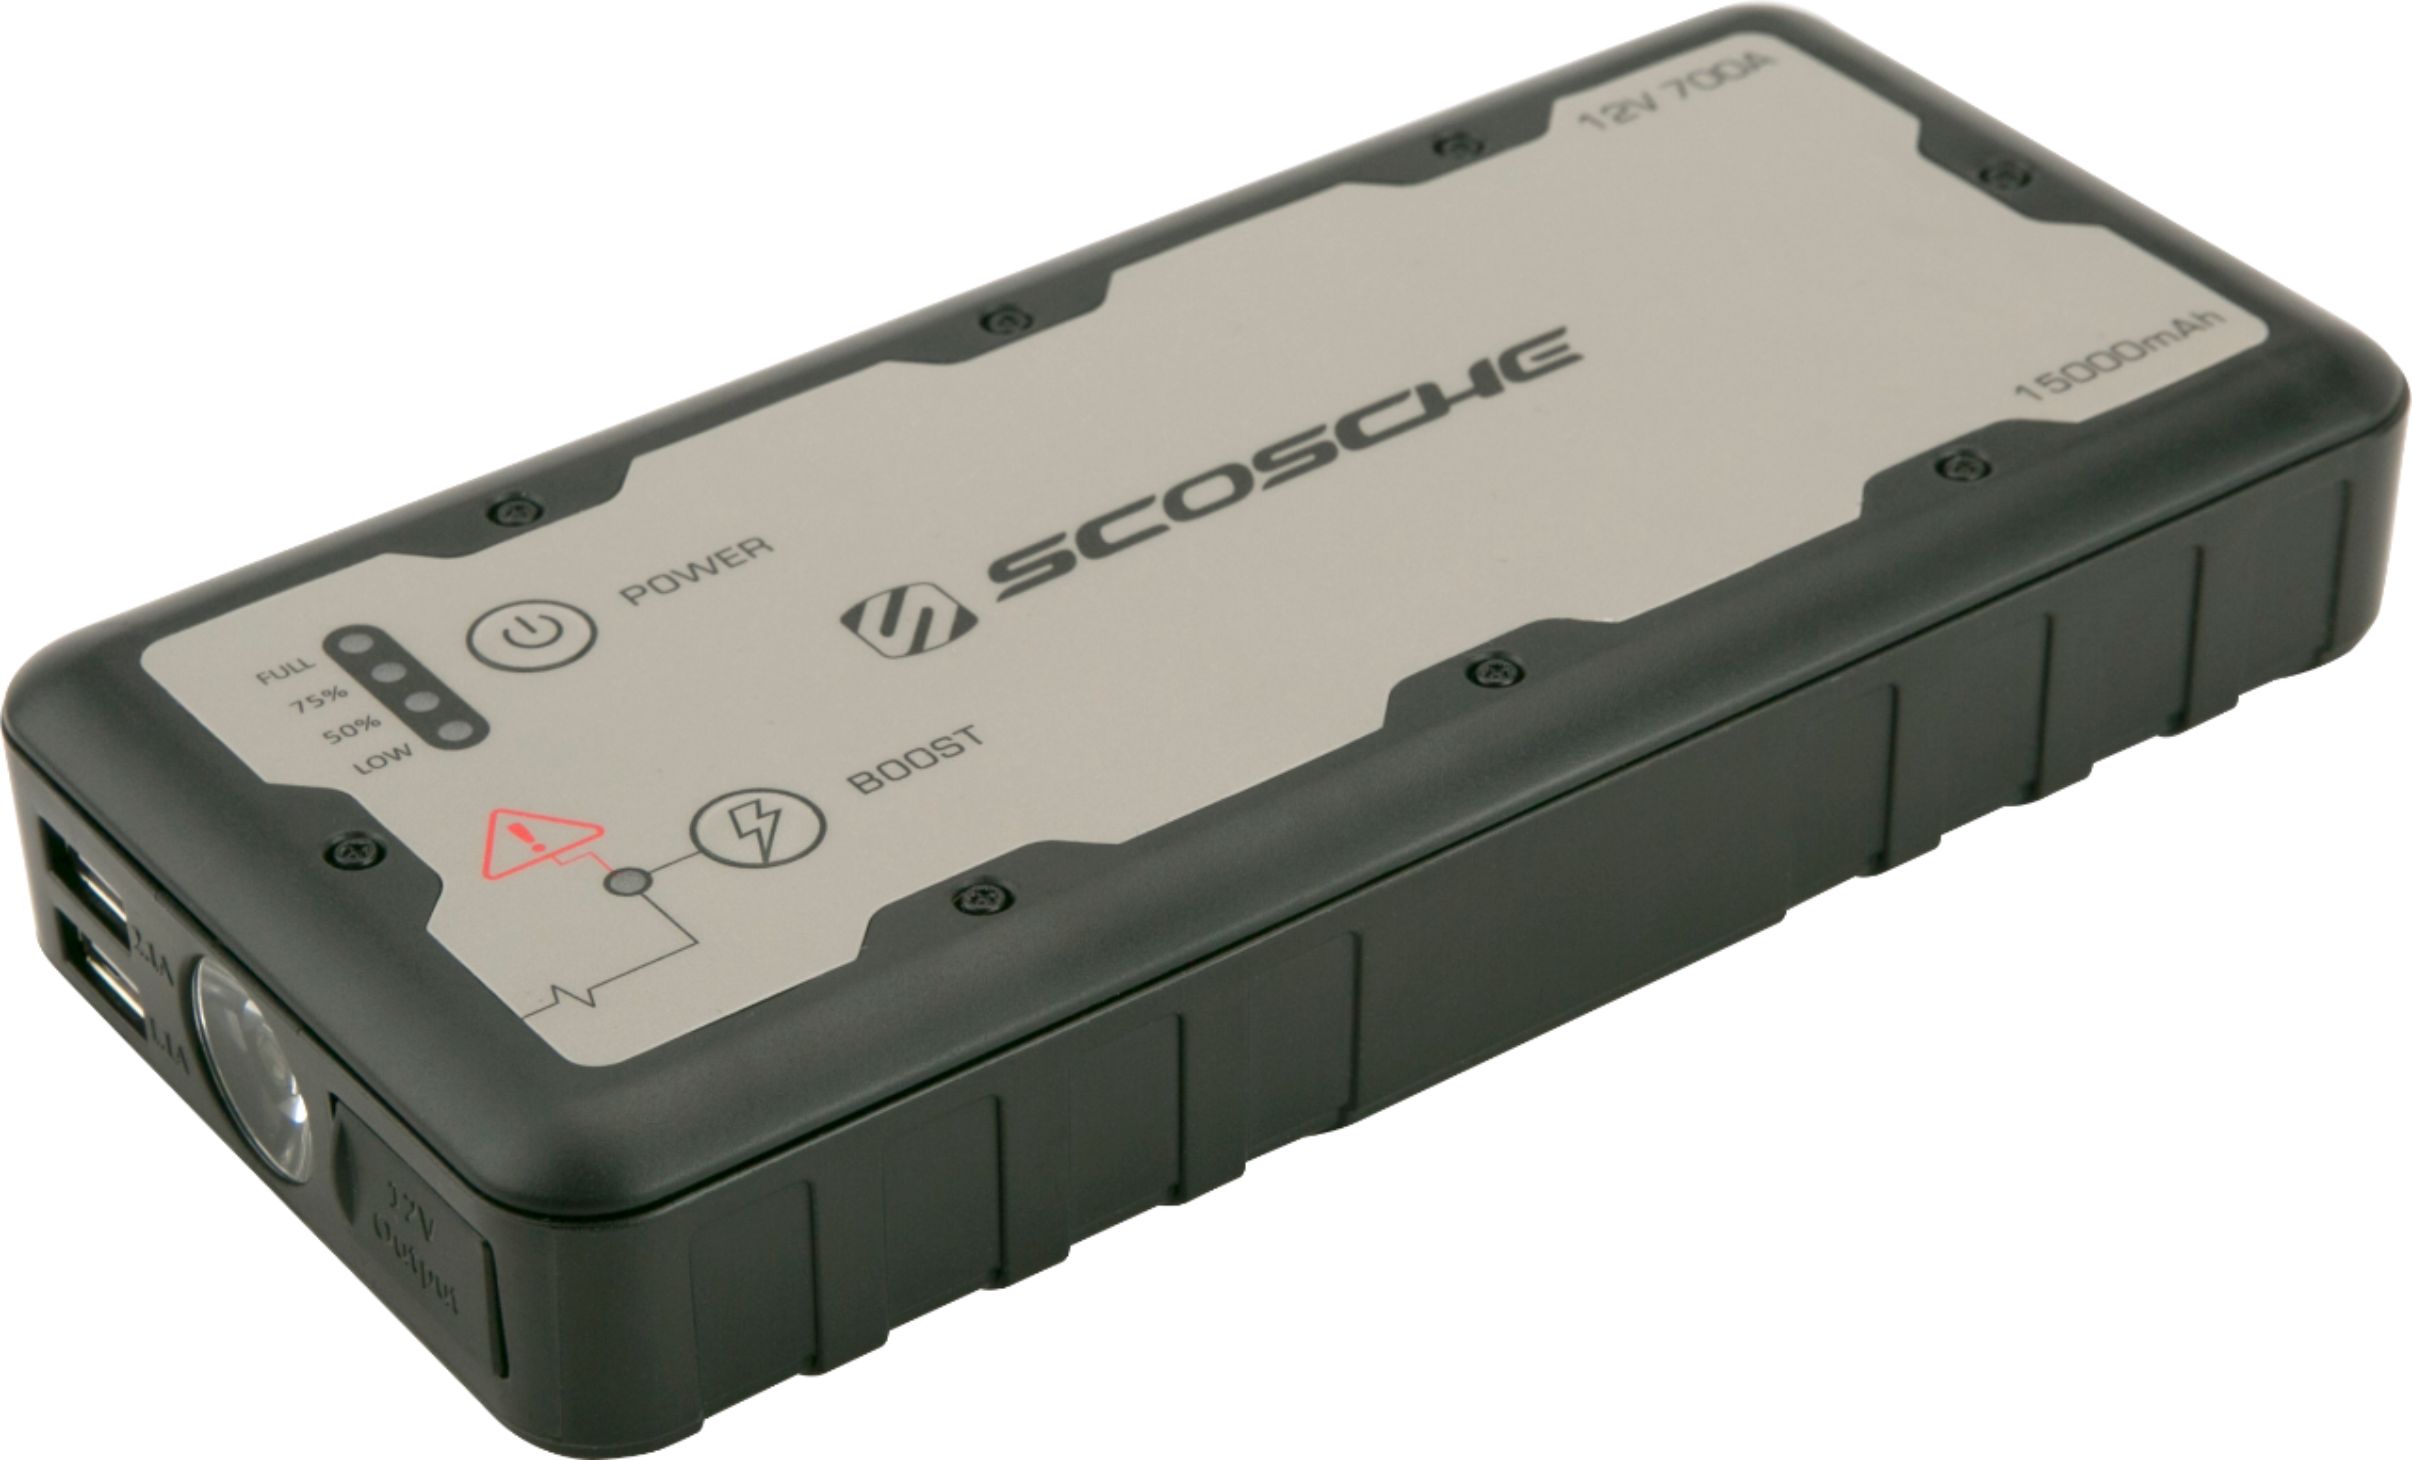 Portable Jump Starter - Scosche PowerUp 700